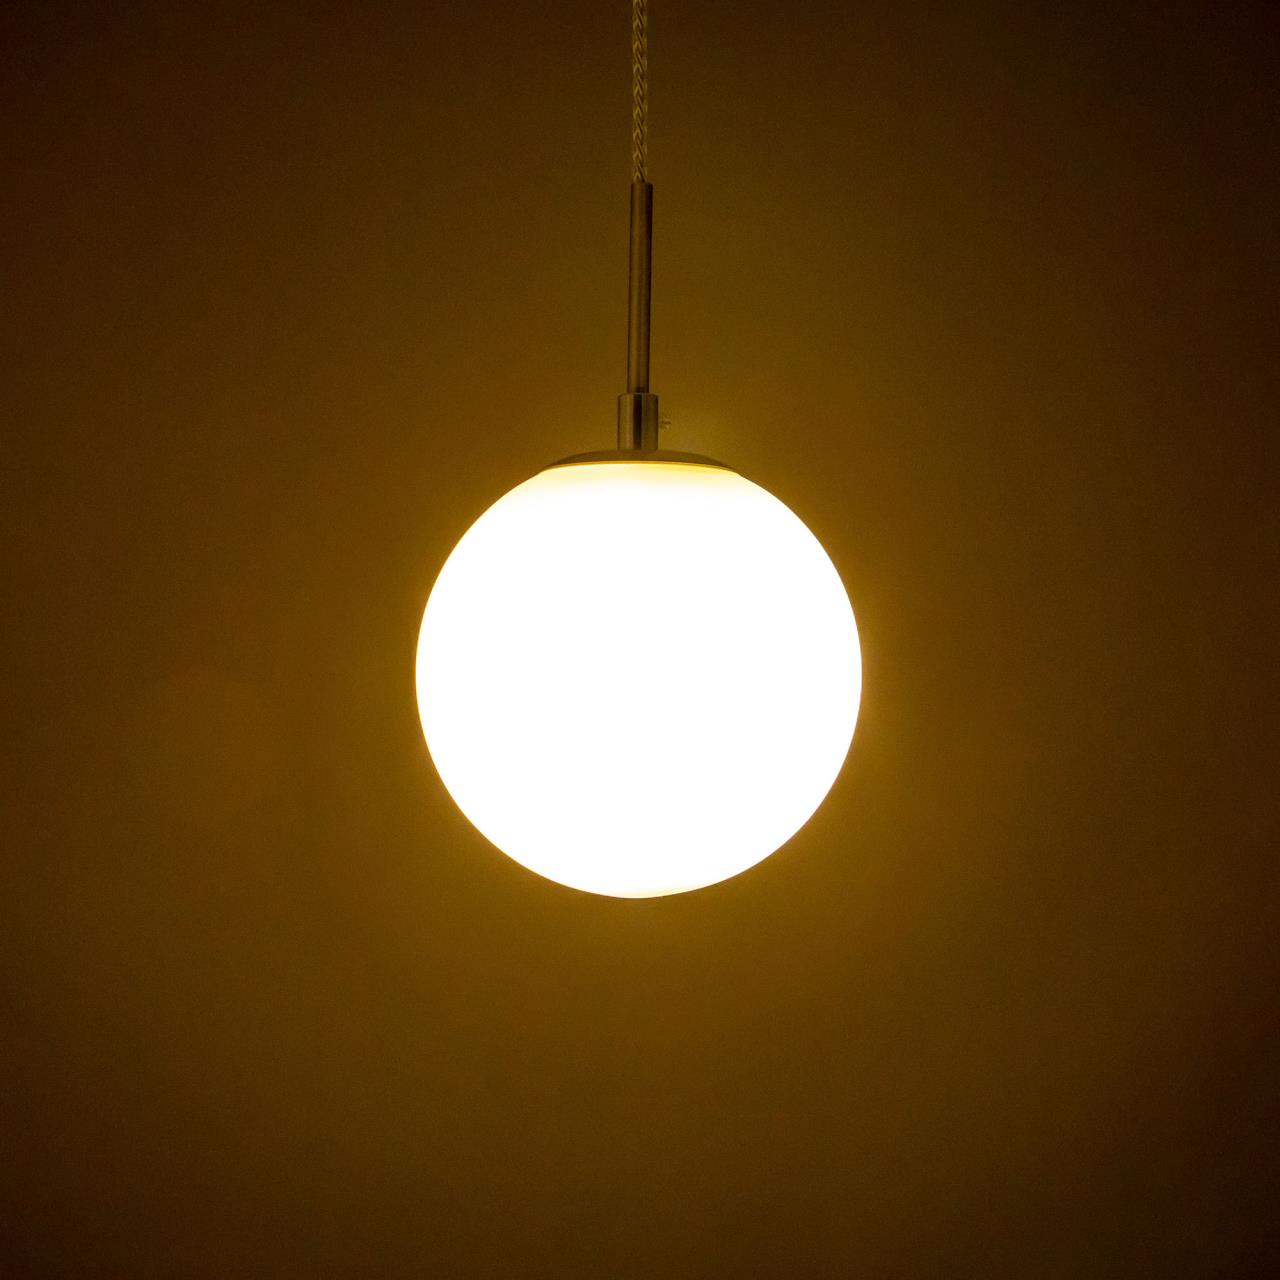 Подвесной светильник Citilux Томми CL102014 в #REGION_NAME_DECLINE_PP#